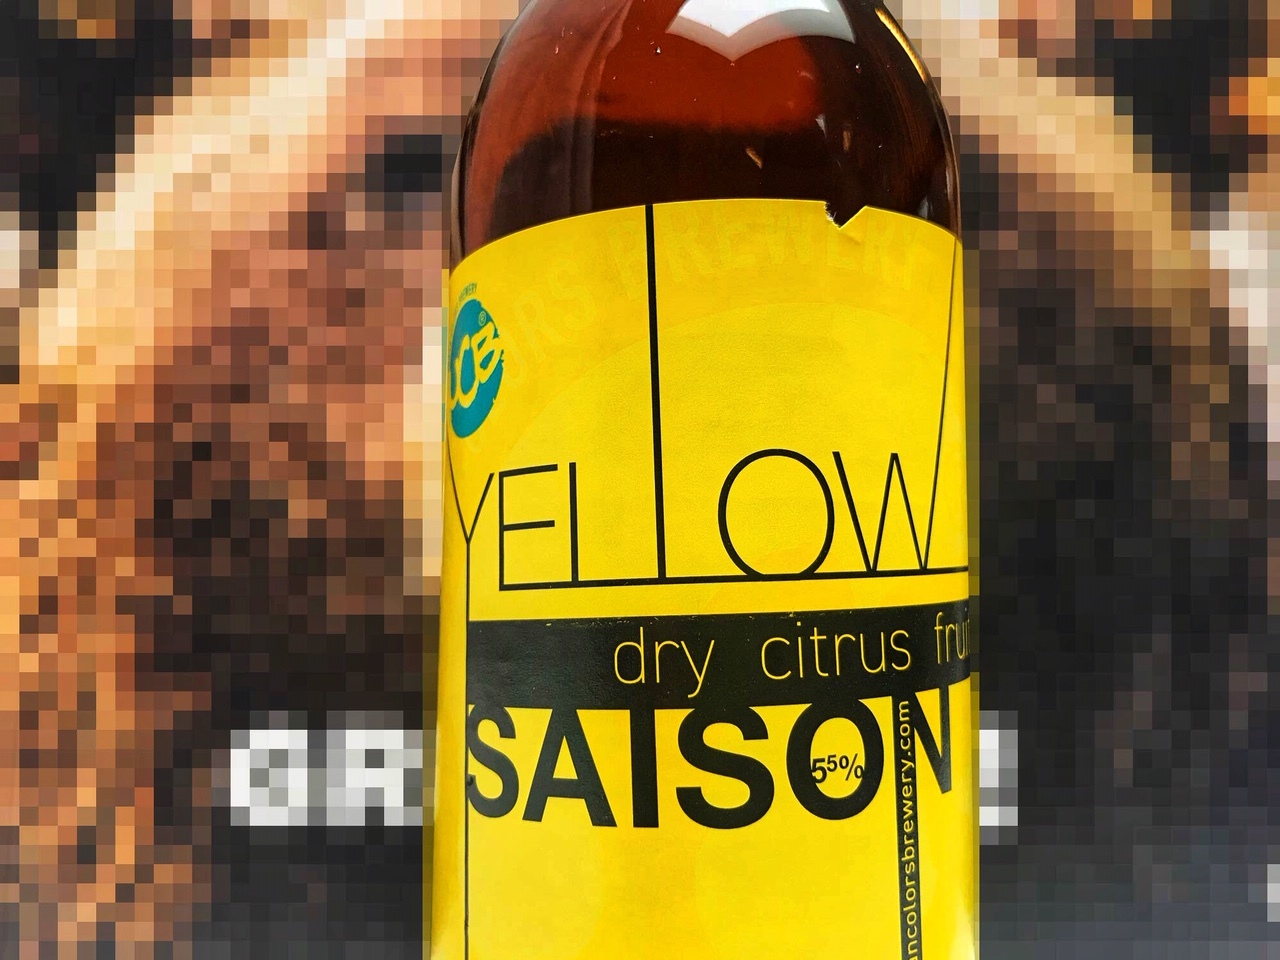 Yellow Saison